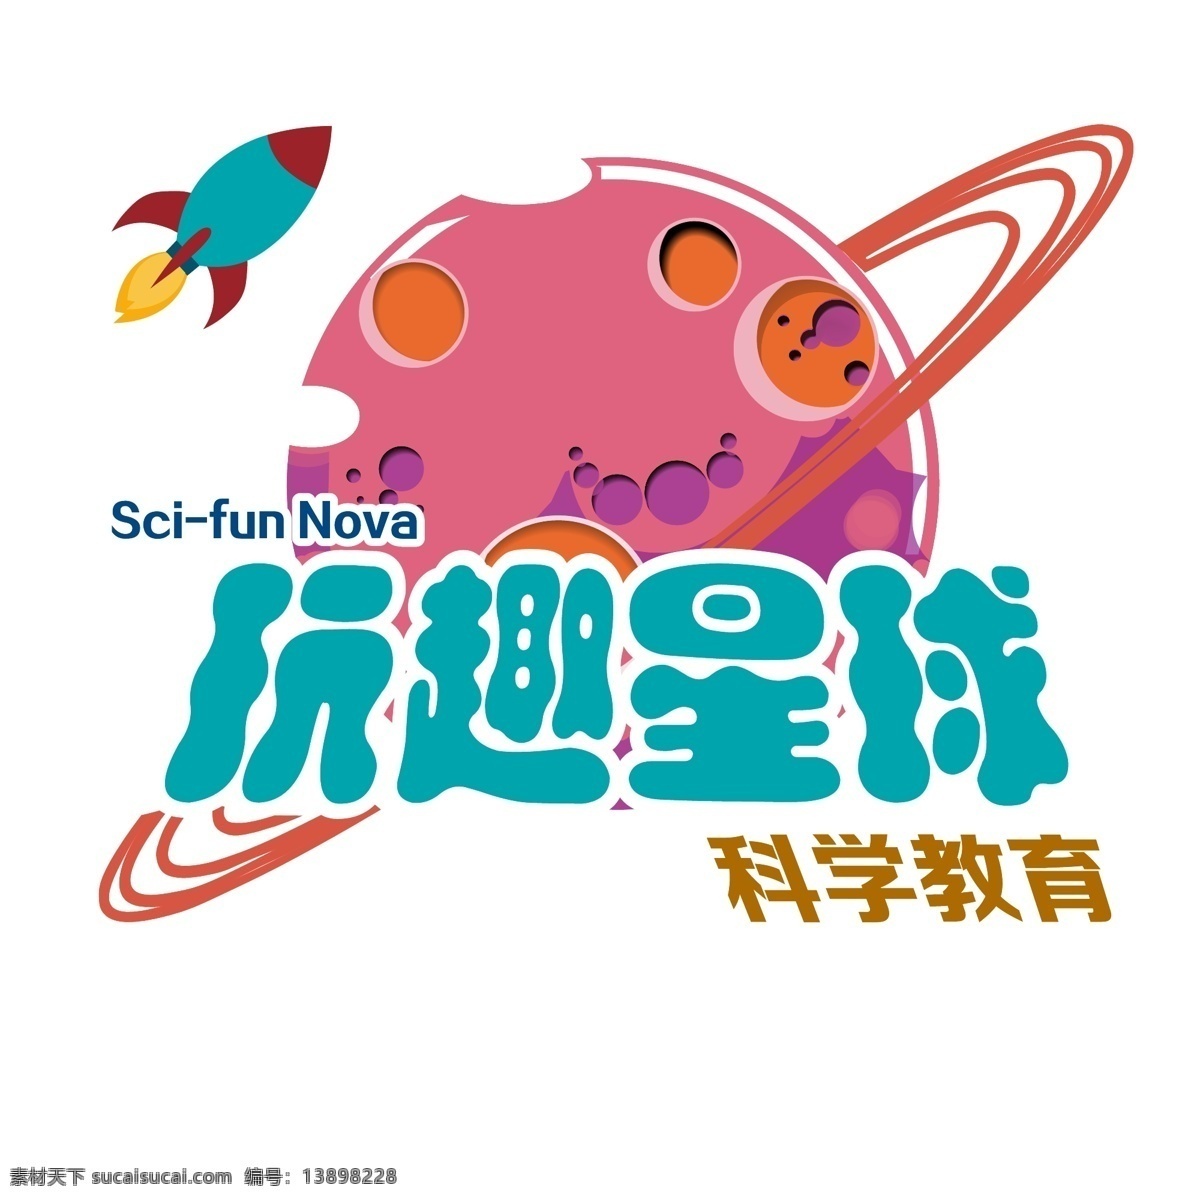 玩 趣 星球 logo 玩趣星球 矢量图 科学教育 广告宣传 logo设计